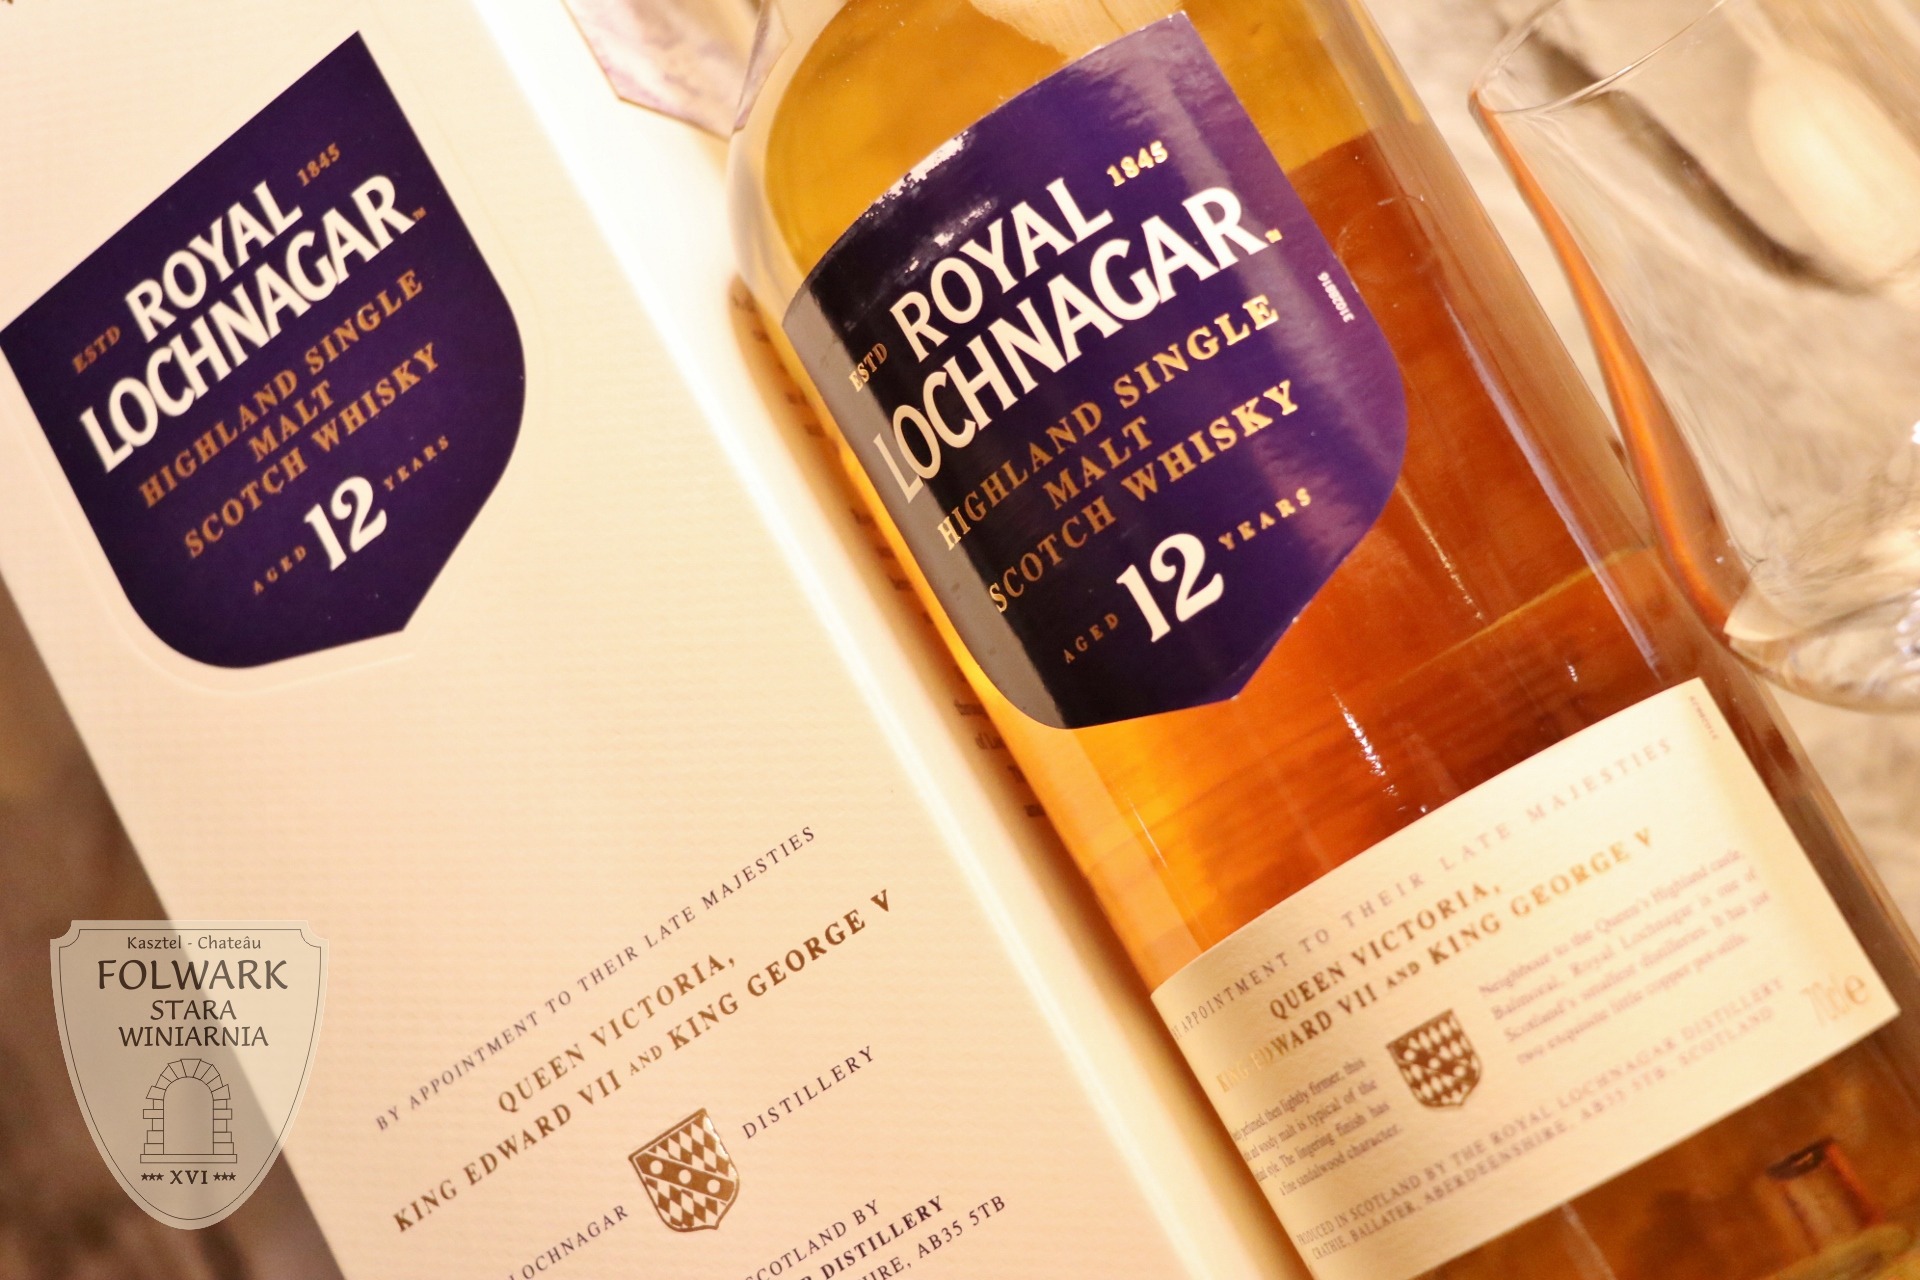 Royal Lochnagar Highland Single Malt Scotch Whisky Aged 12 Years